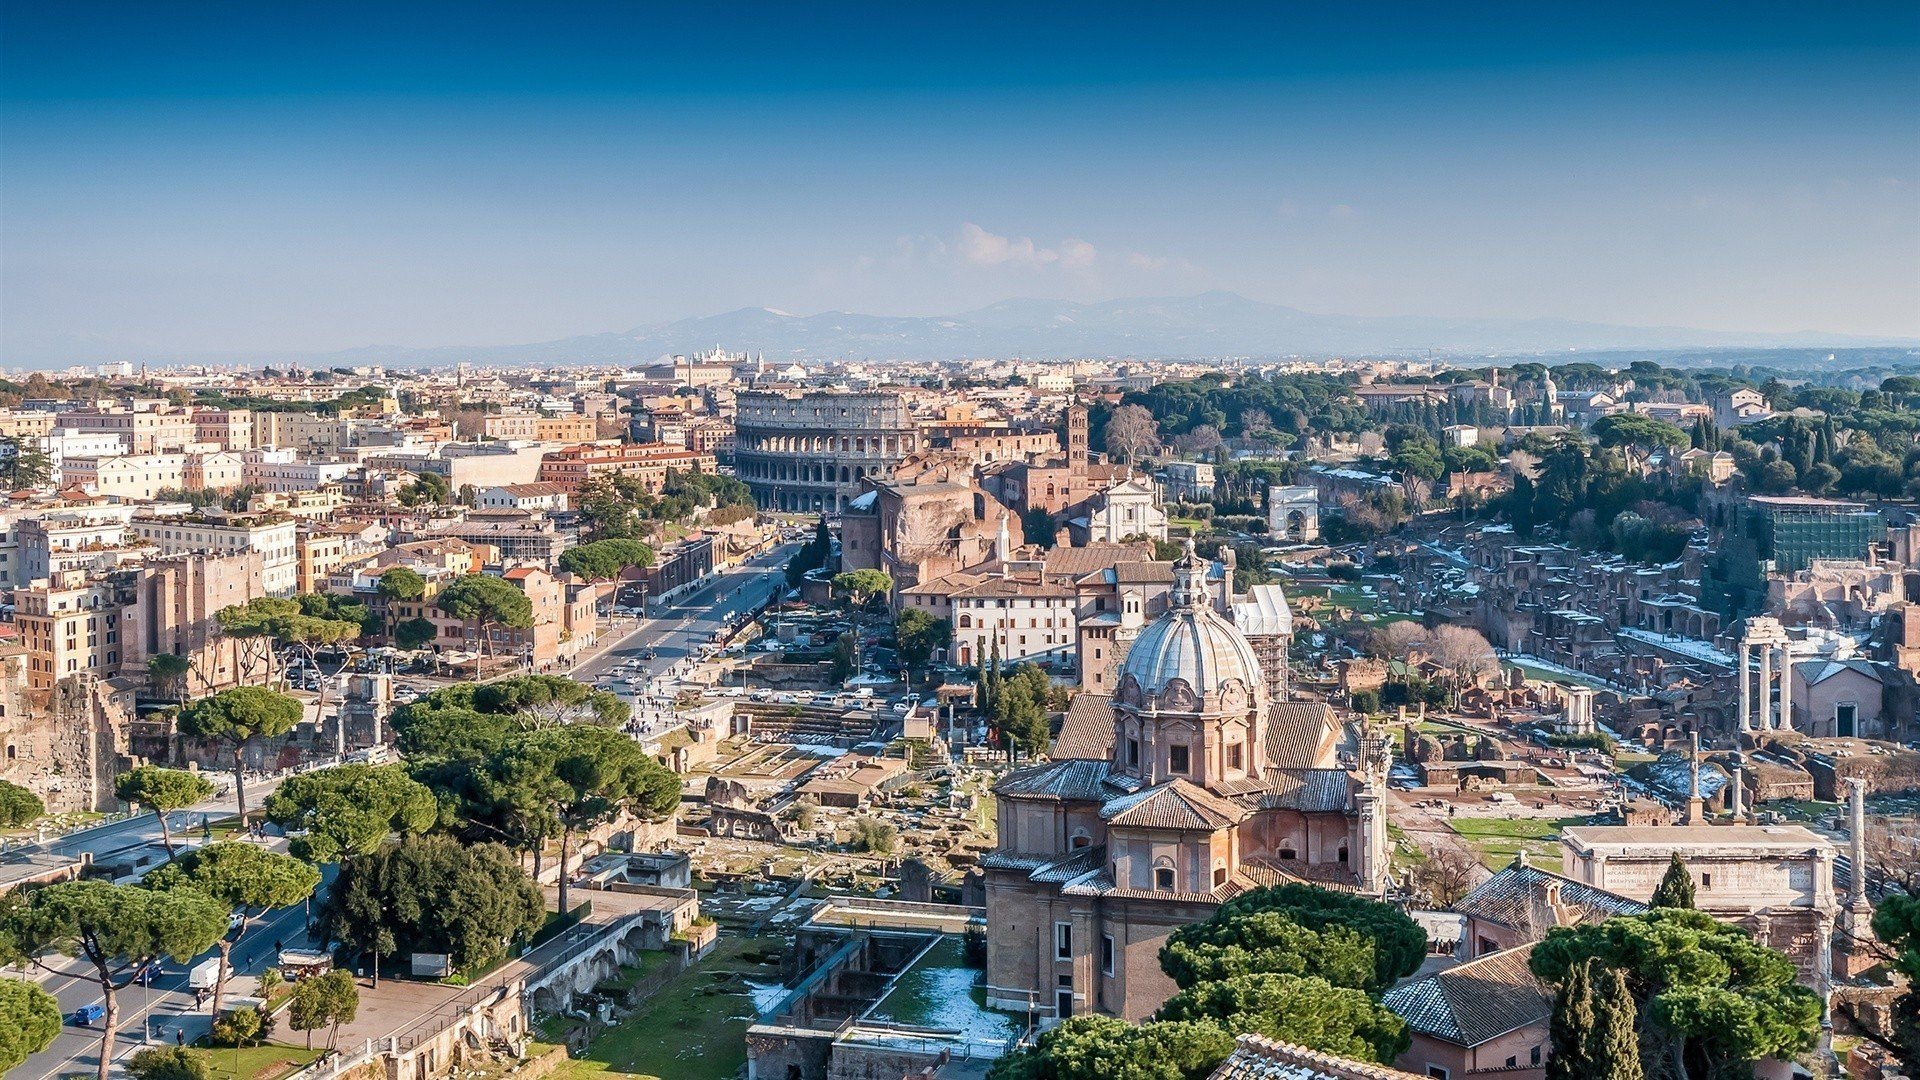 Rome skyline, Ancient wonders, Eternal city, Italian grandeur, 1920x1080 Full HD Desktop